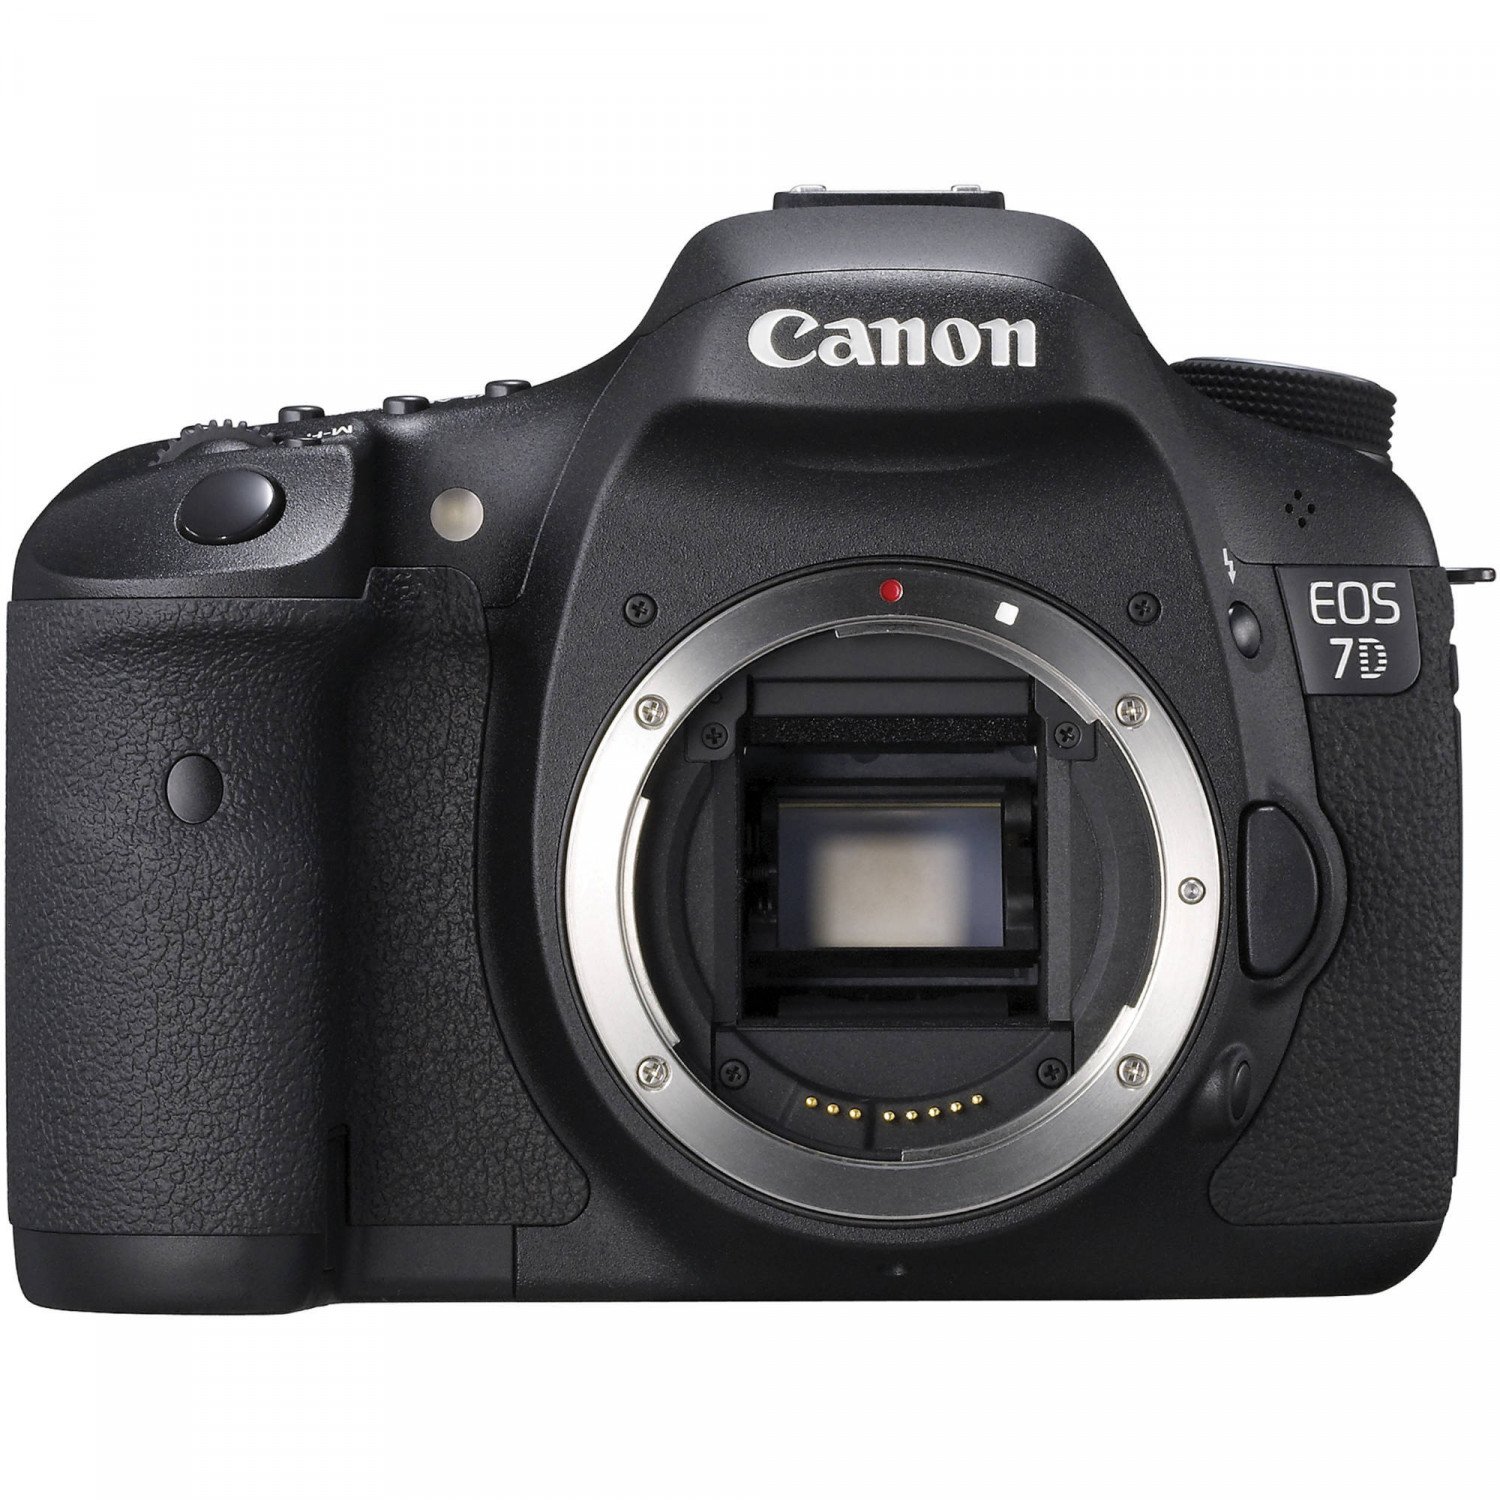 Được trang bị những tính năng nổi trội giúp máy chụp ảnh Canon EOS 7D mang lại cho bạn những bức hình chất lượng tuyệt đỉnh, vượt xa những gì bạn mong đợi. Kết hợp với tốc độ chụp ấn tượng và khả năng quay phim Full HD, chắc chắn máy ảnh này sẽ là lựa chọn hoàn hảo cho những người yêu thích nhiếp ảnh.